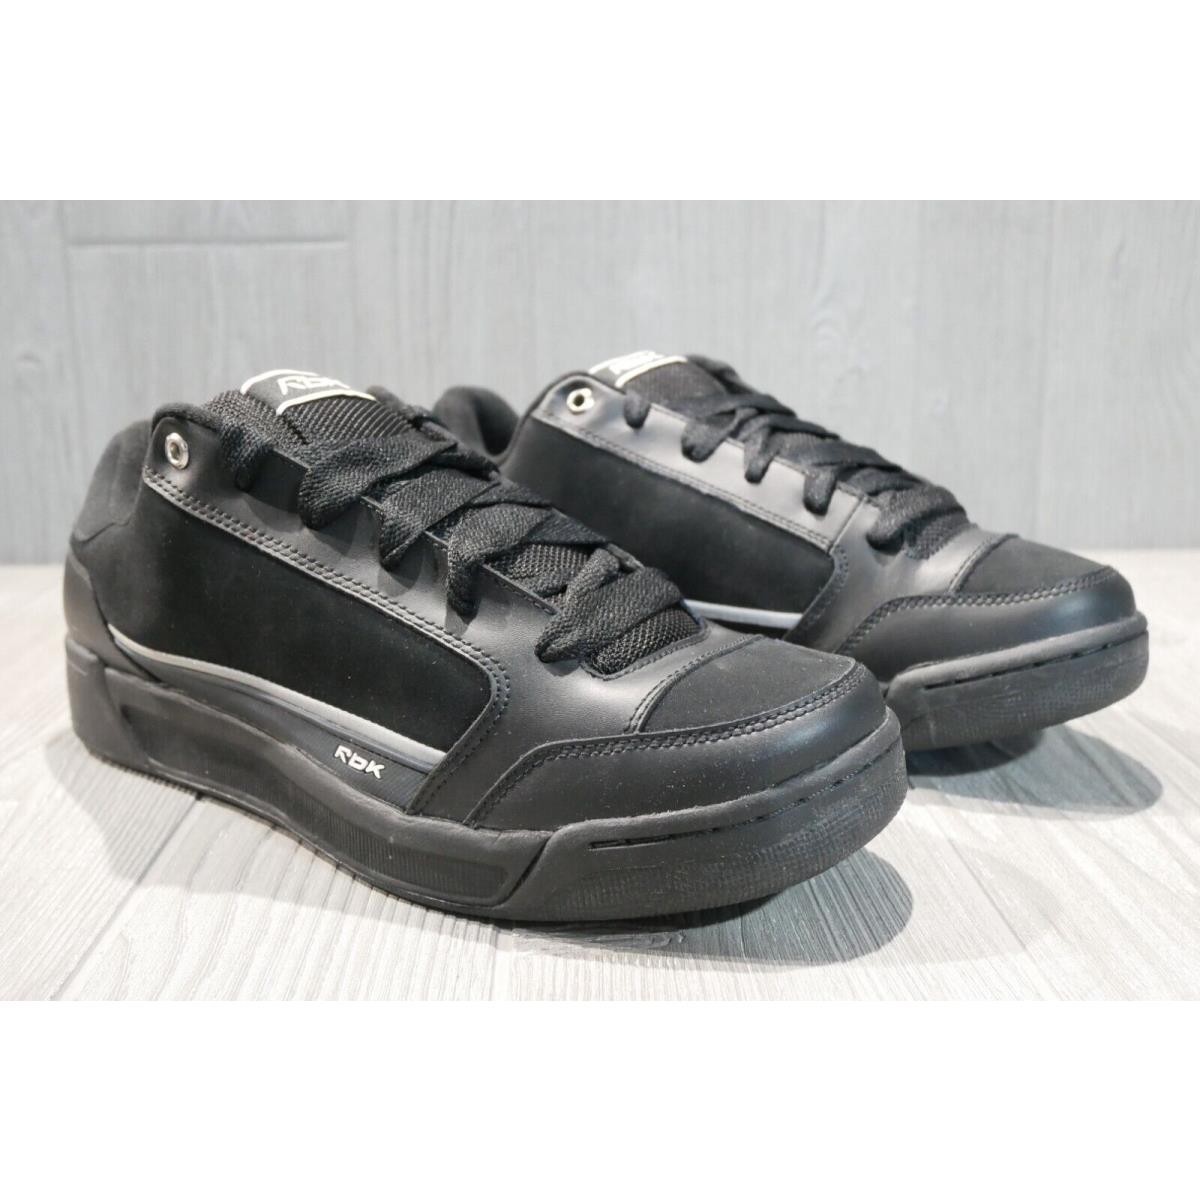 Reebok shoes RBK - Black 1